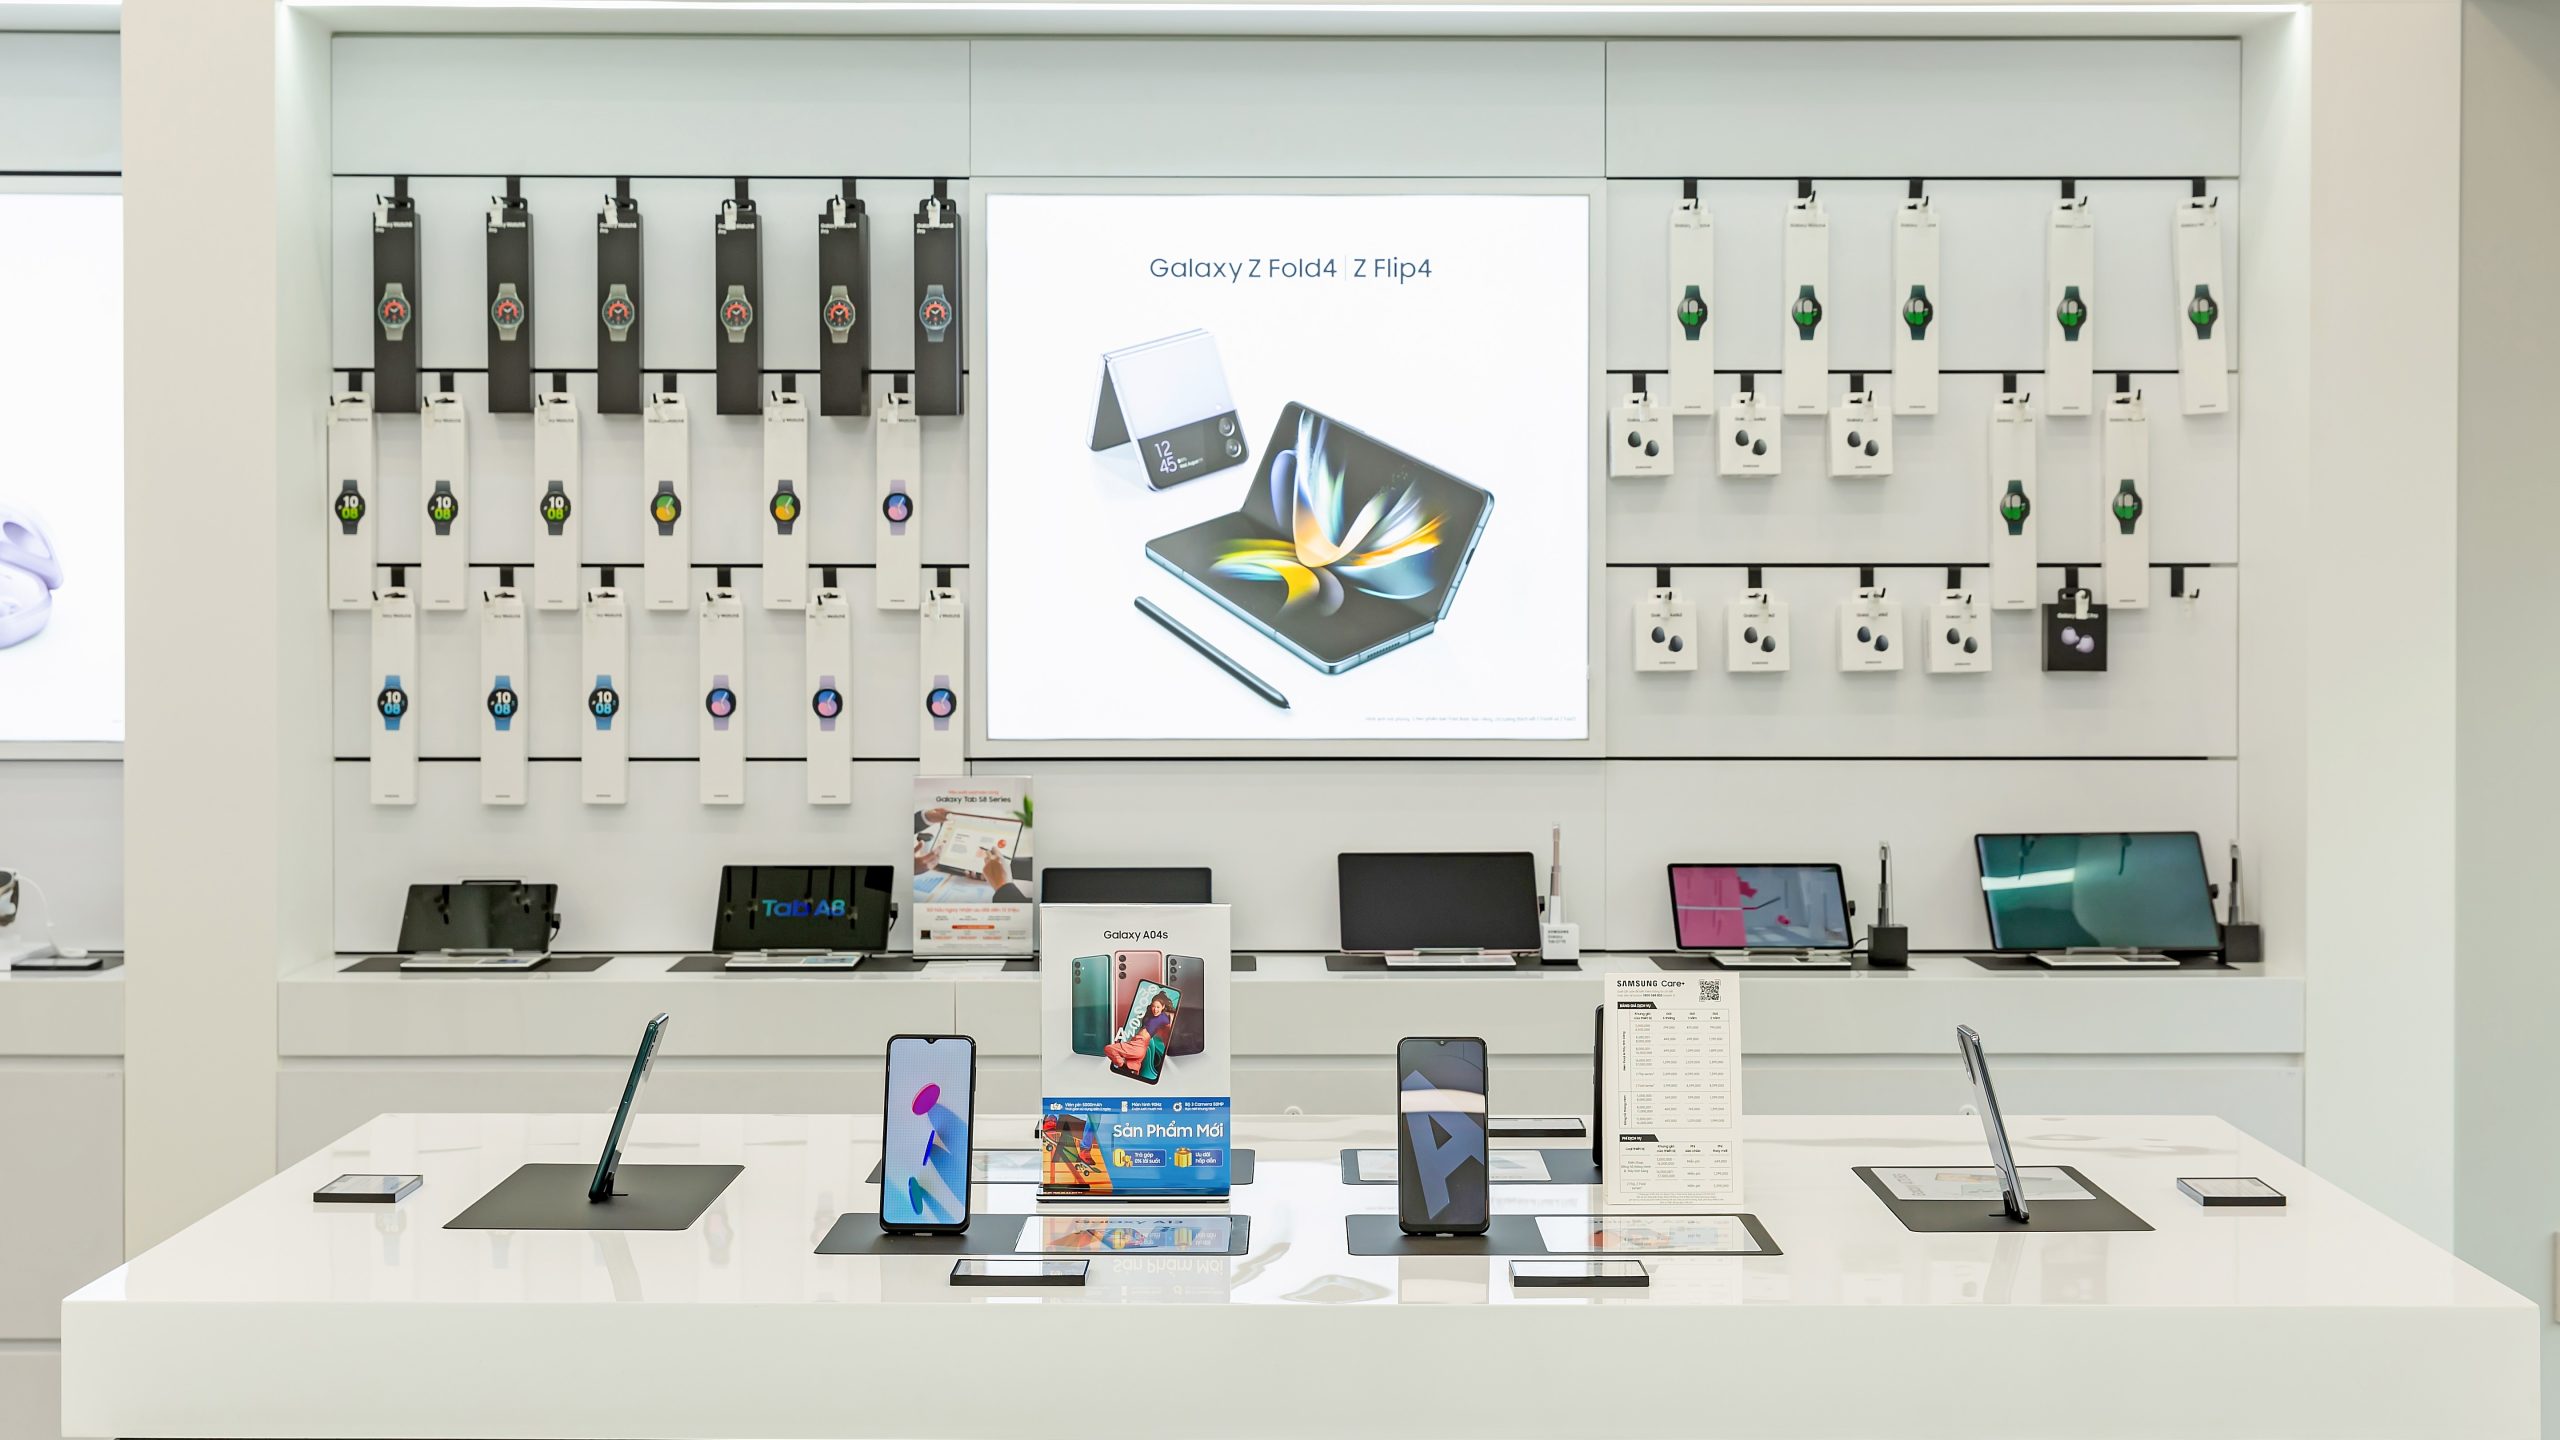 Đồng loạt ra mắt hệ thống cửa hàng trải nghiệm Samsung Galaxy House tại TP.HCM, khách hàng nhận nhiều ưu đãi 10